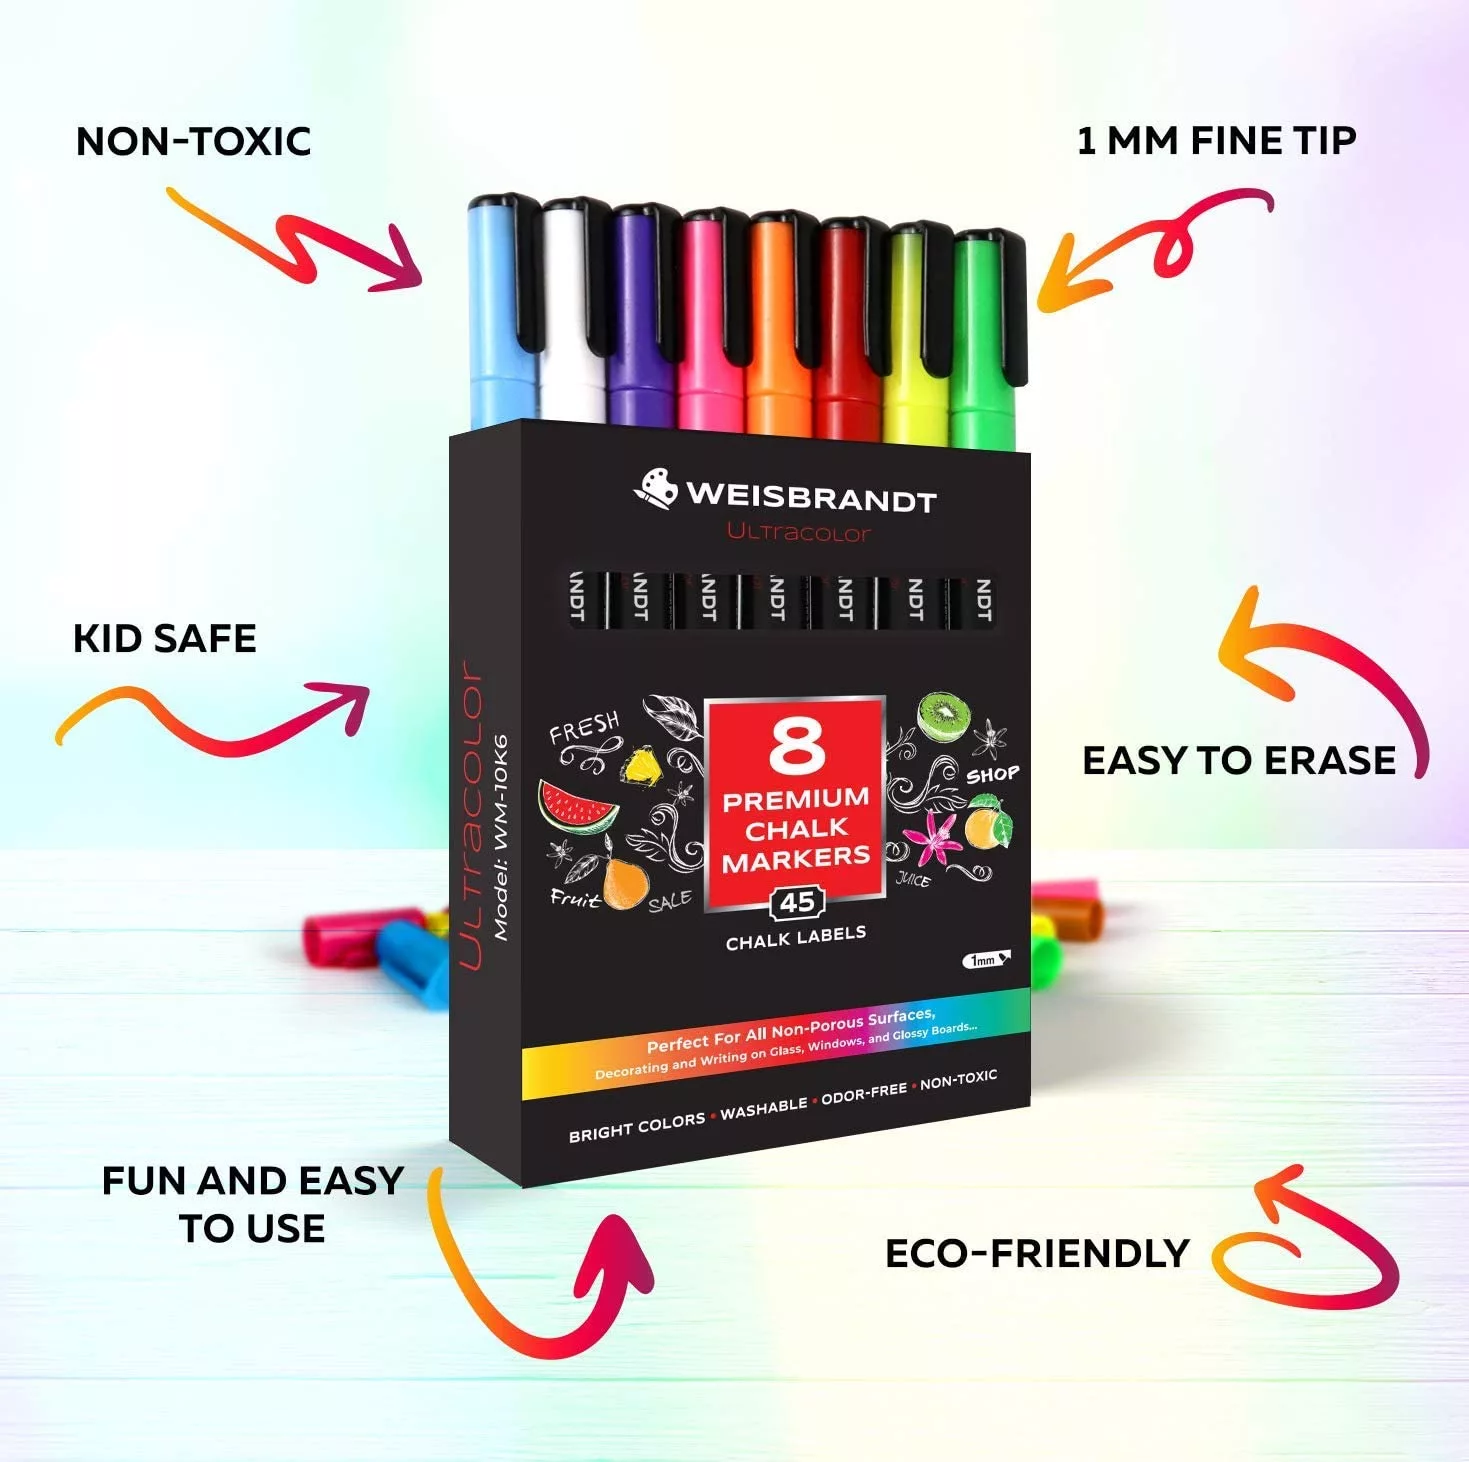 8pcs Whiteboard & Chalkboard Marker Pen, Erasable & Refillable, Fine Point  Tip, Black/red/blue, For Office & Teacher